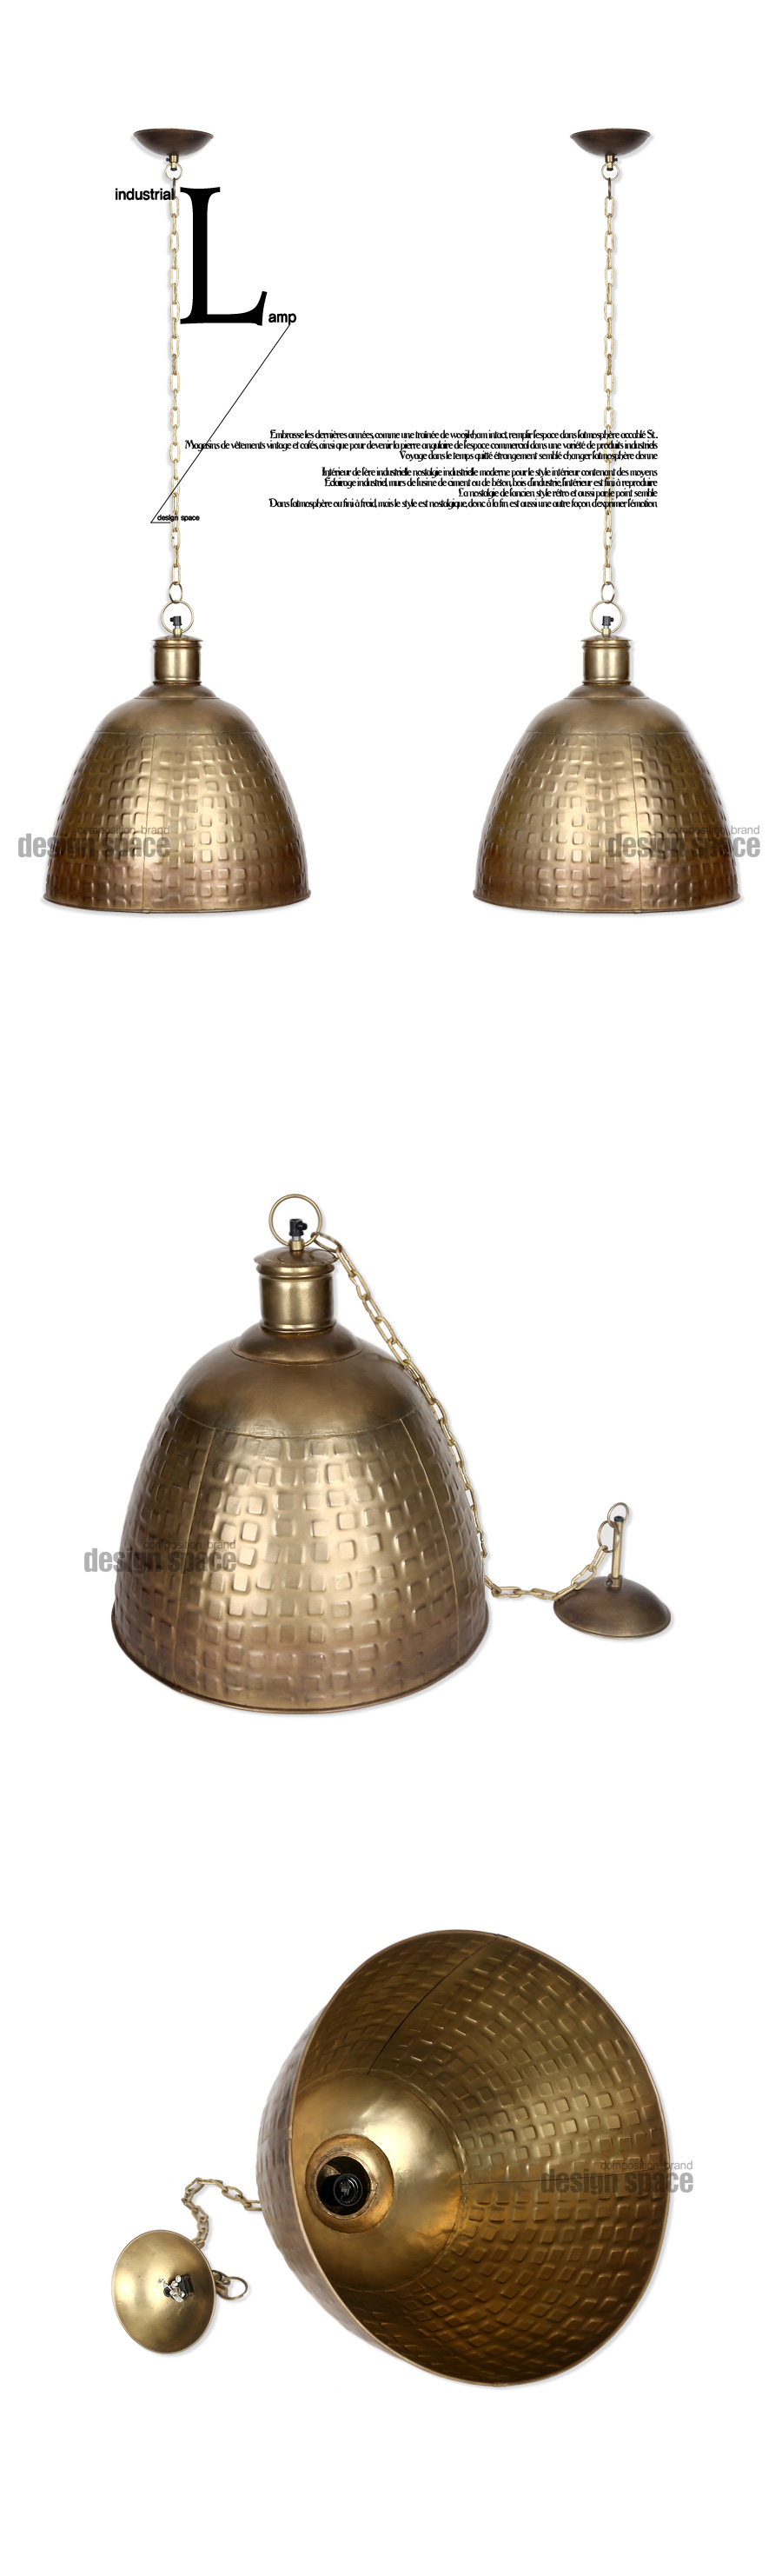 lamp-1932_02.jpg